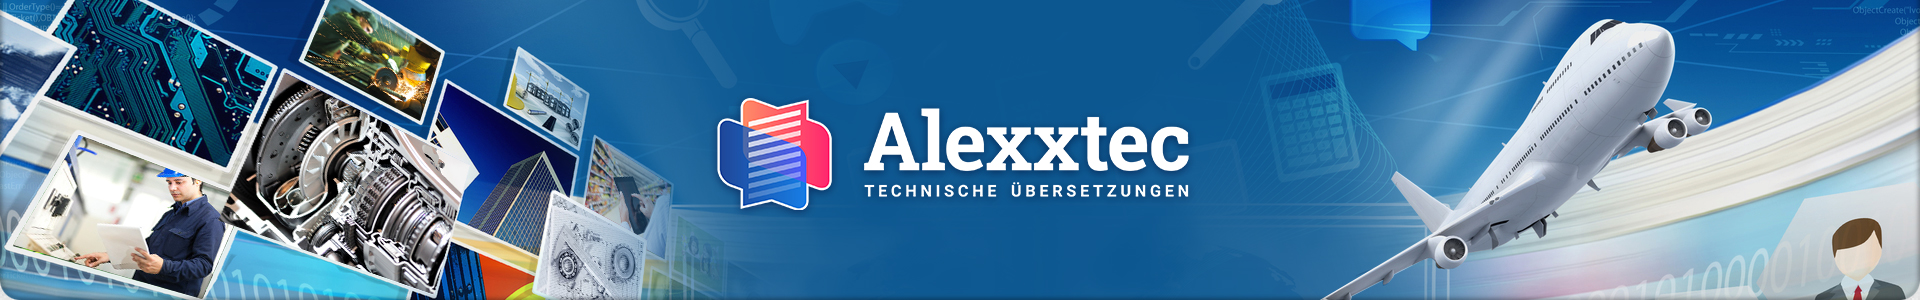 Alexxtec